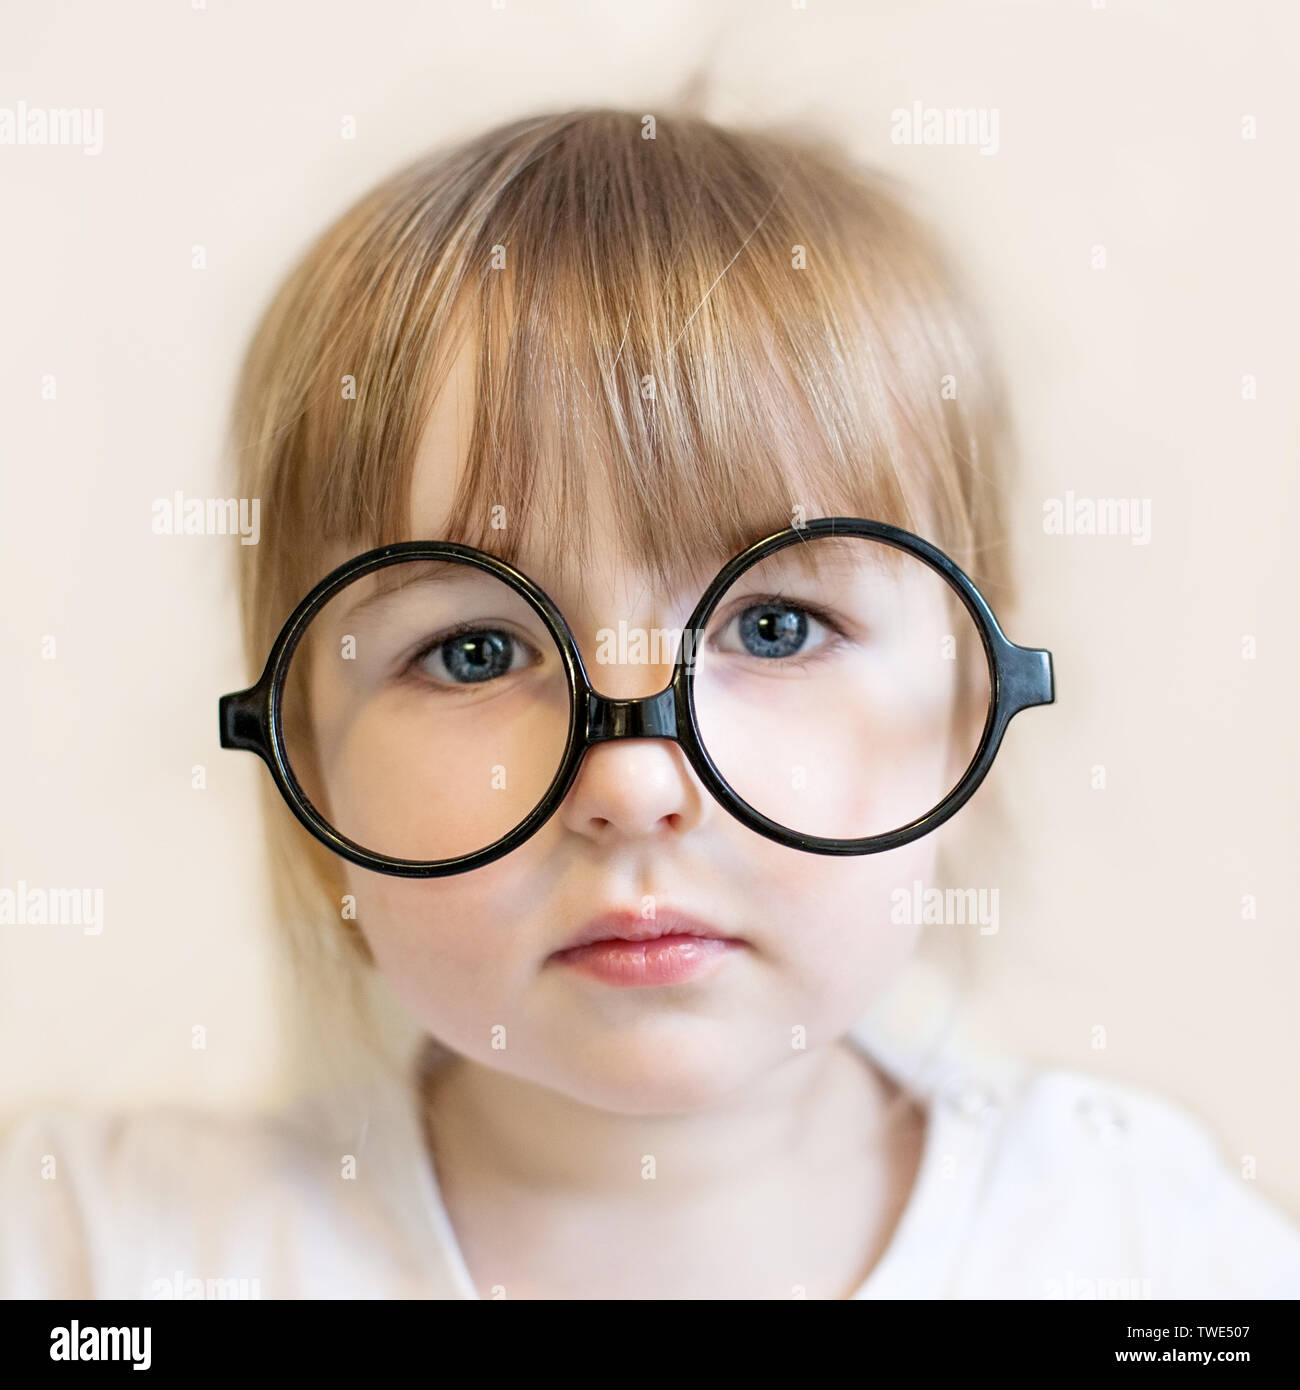 Niedliche kind Mädchen mit grossen runden schwarzen Lehrer Brille auf der Nase Stockfoto